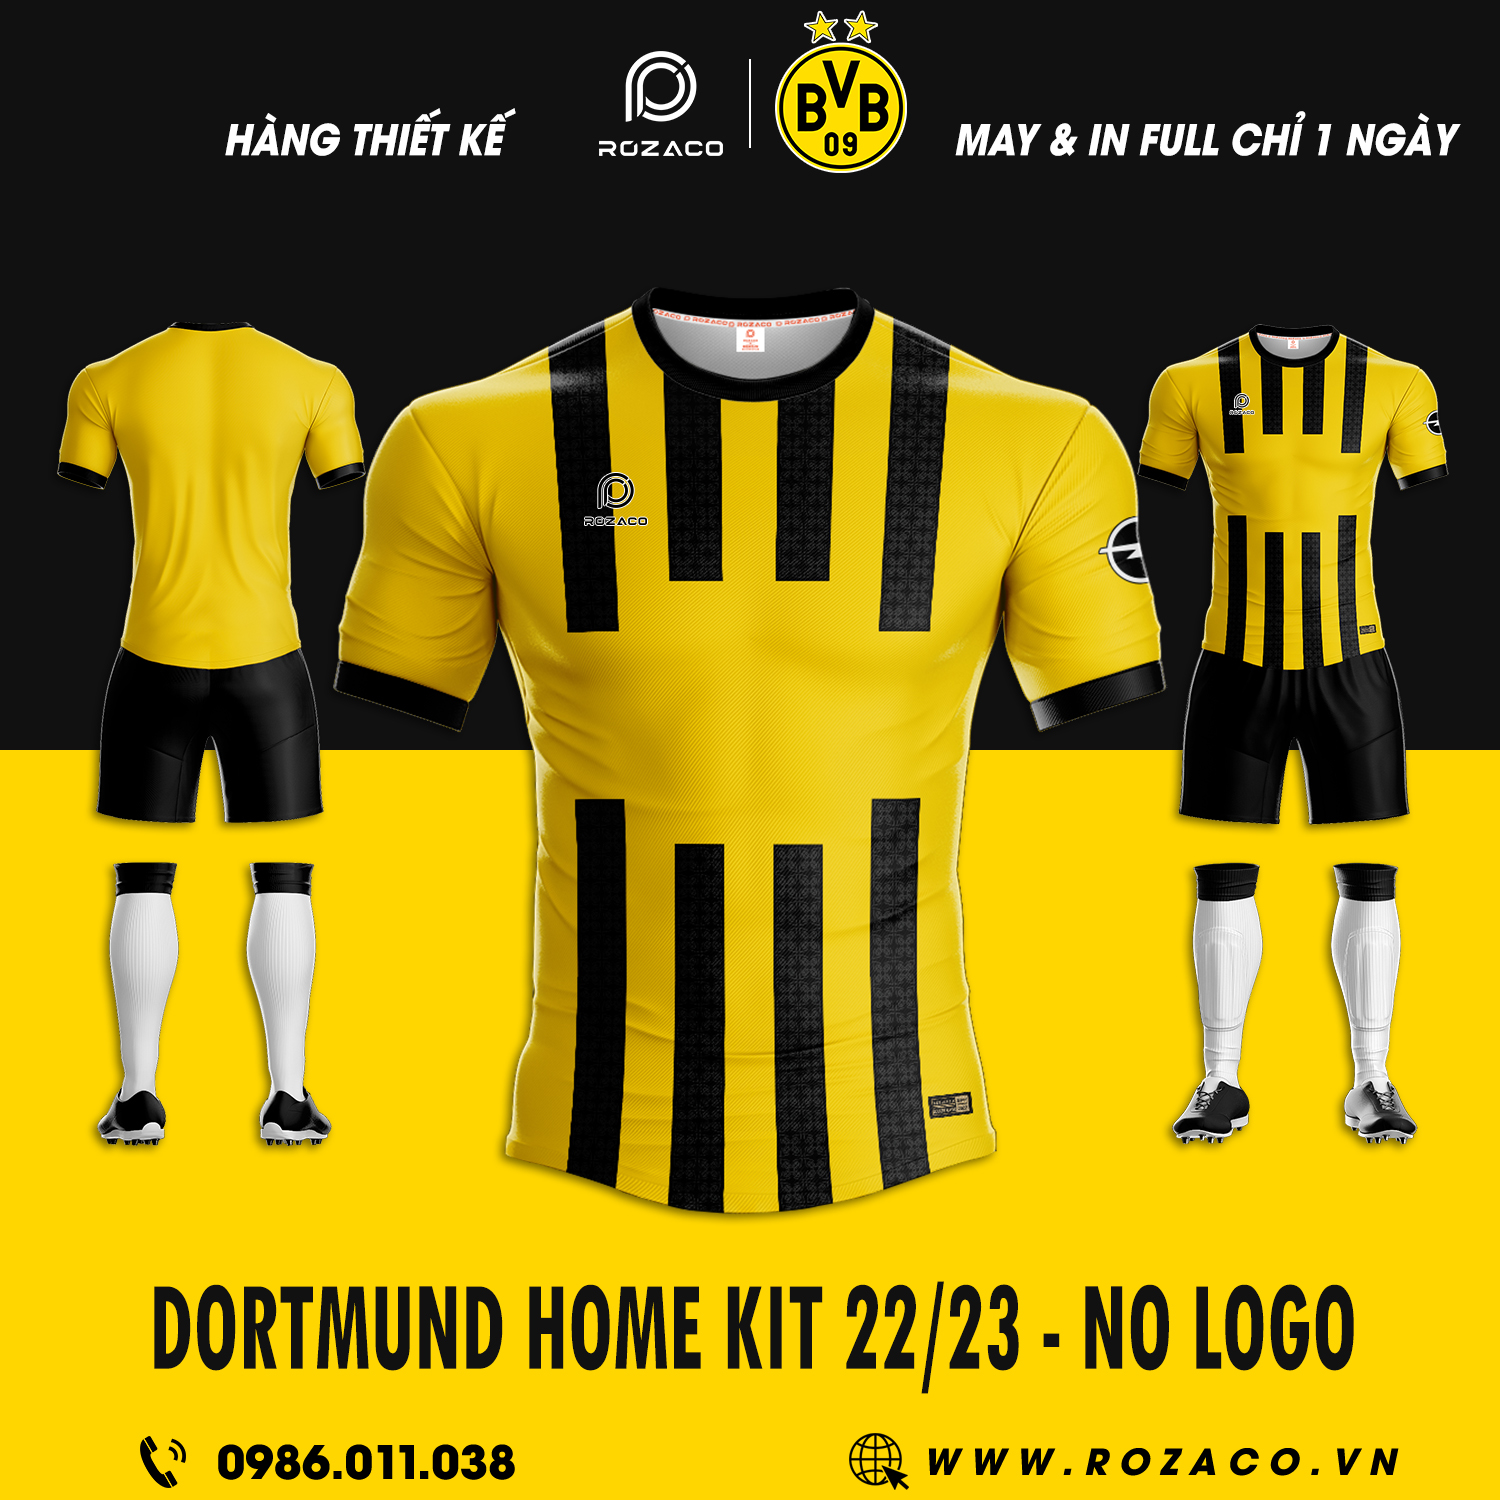 Đã đến lúc bạn nên phá cách với áo bóng đá CLB Dortmund sân nhà 2023 rực rỡ và đầy thu hút dưới đây. Thiết kế này còn được nhấn nhá bằng các đường sọc màu đen nổi bật. Nếu yêu thích đội tuyển hay màu sắc này thì đừng quên liên hệ để được sở hữu ngay nhé. 